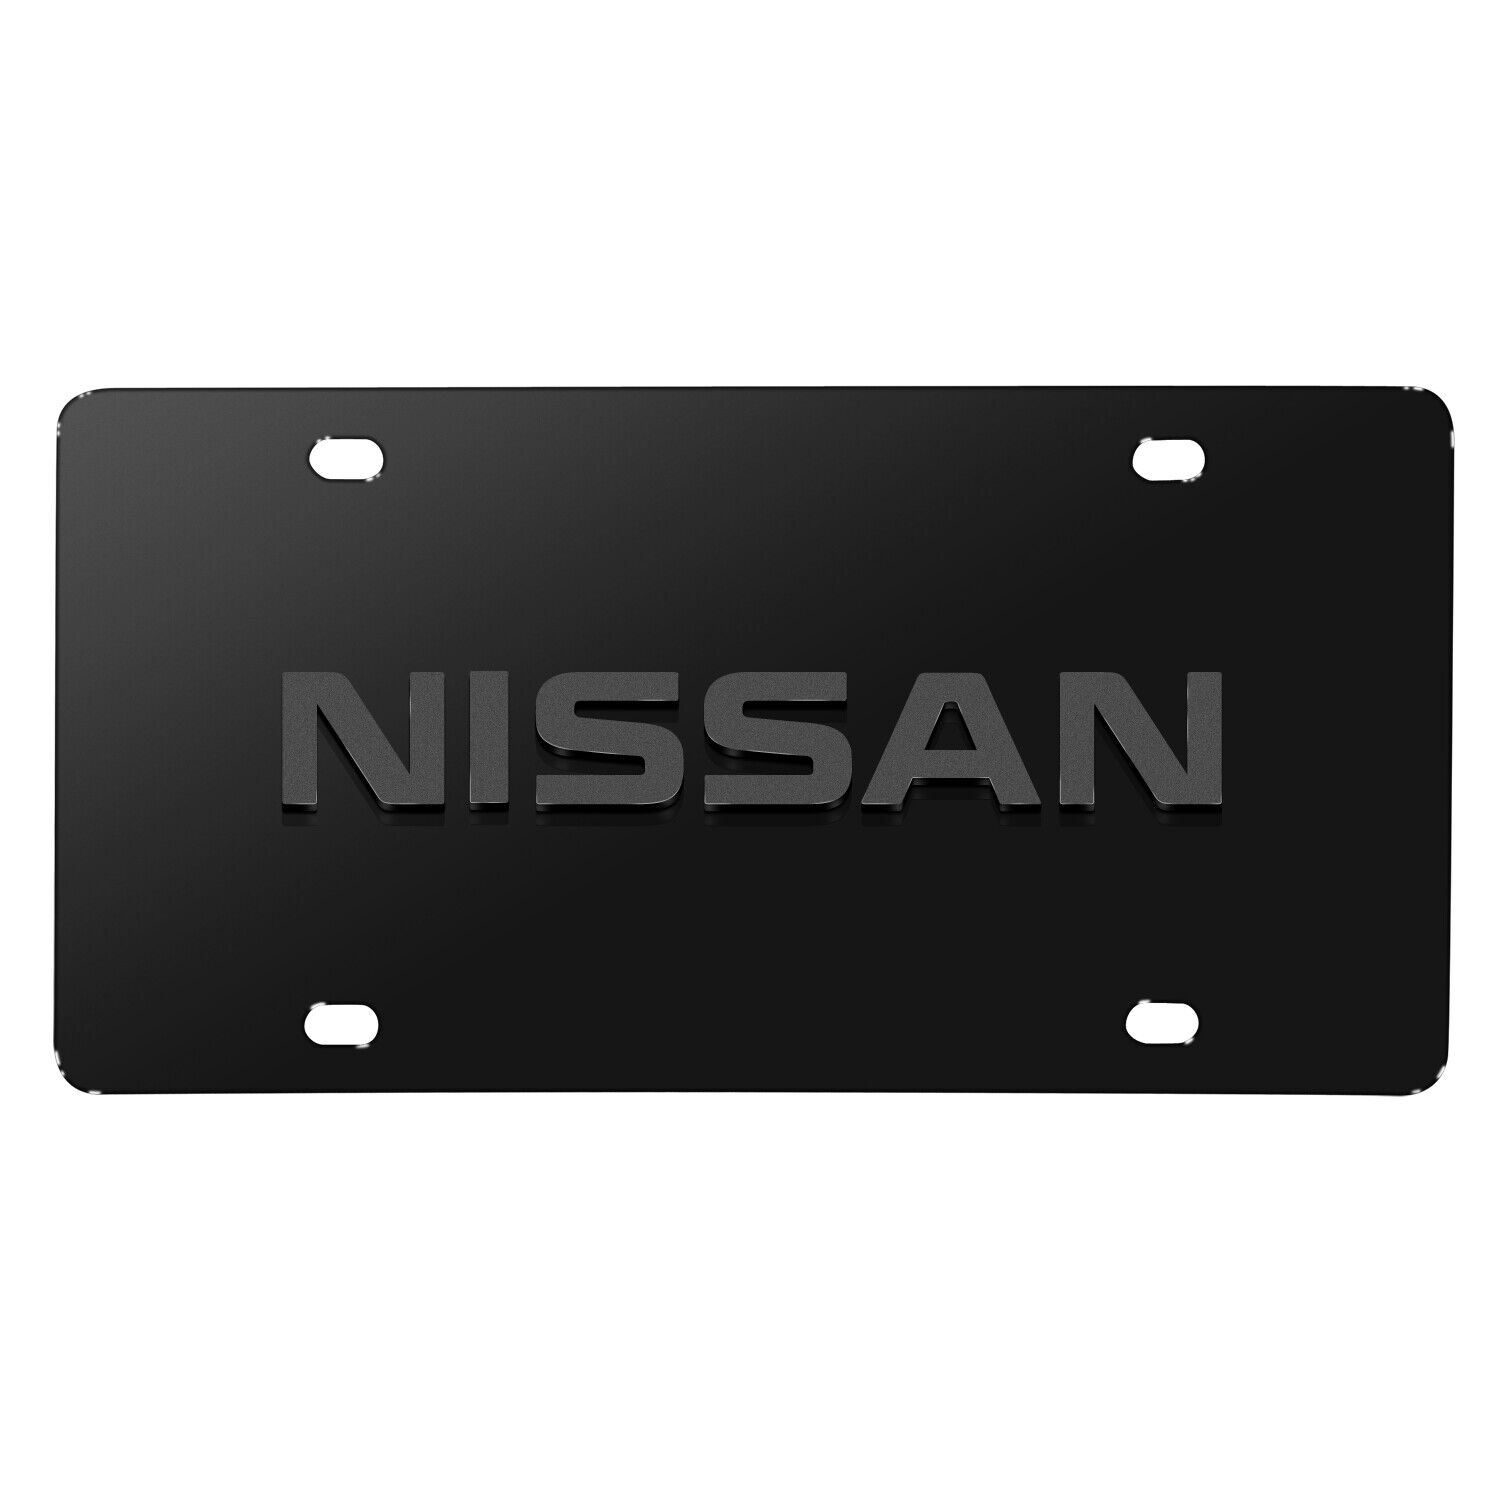 Nissan Name 3D Dark Gray Logo on Black Stainless Steel License Plate